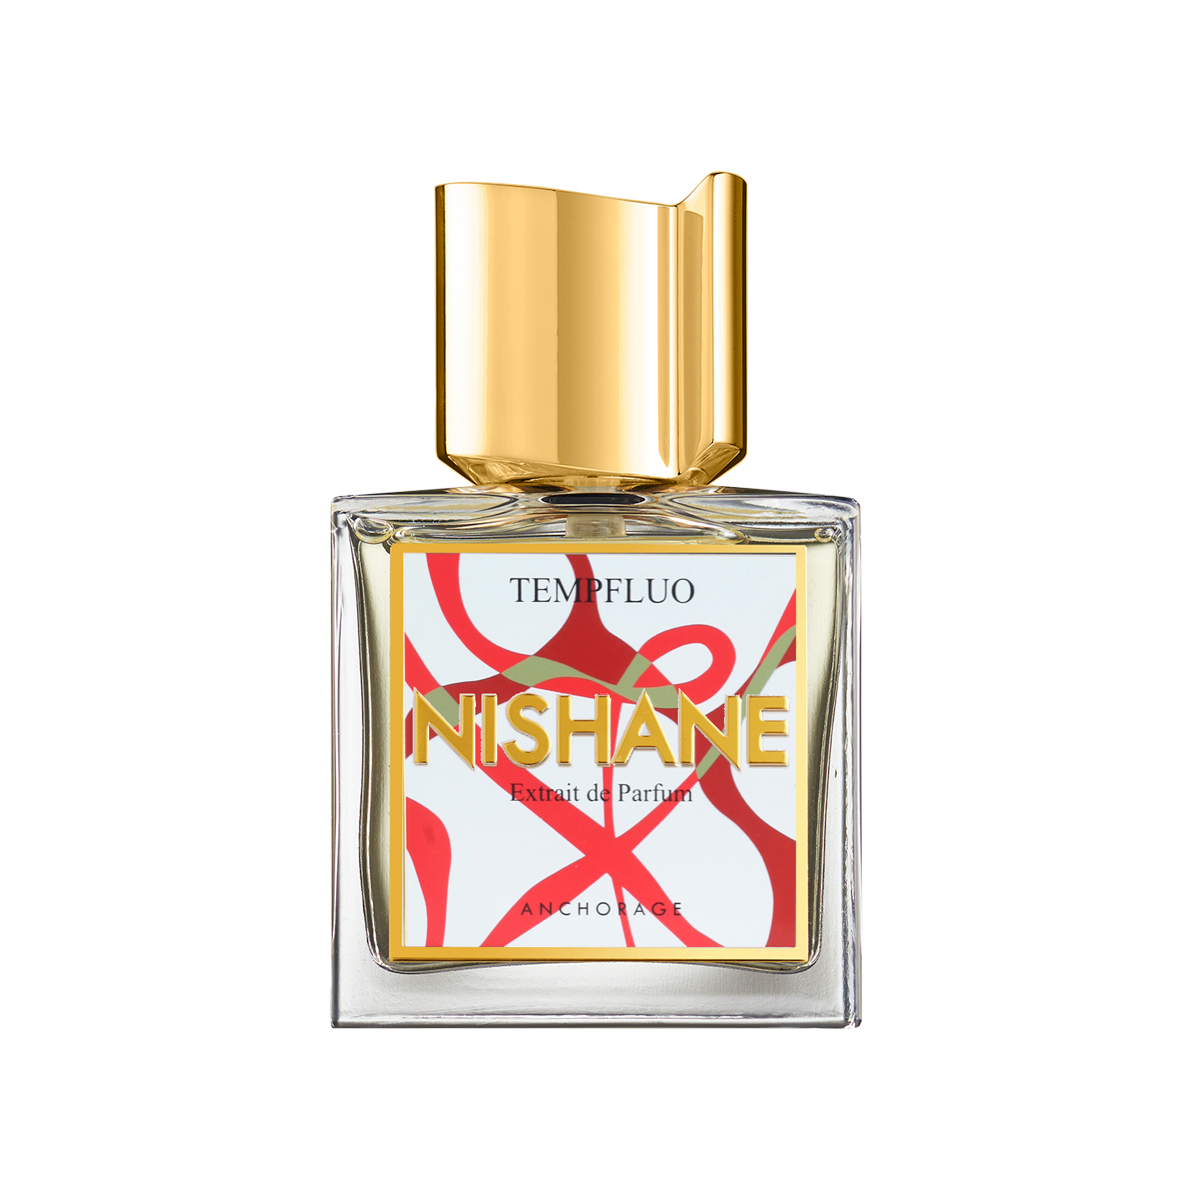 Nishane - Tempfluo Extrait de Parfum